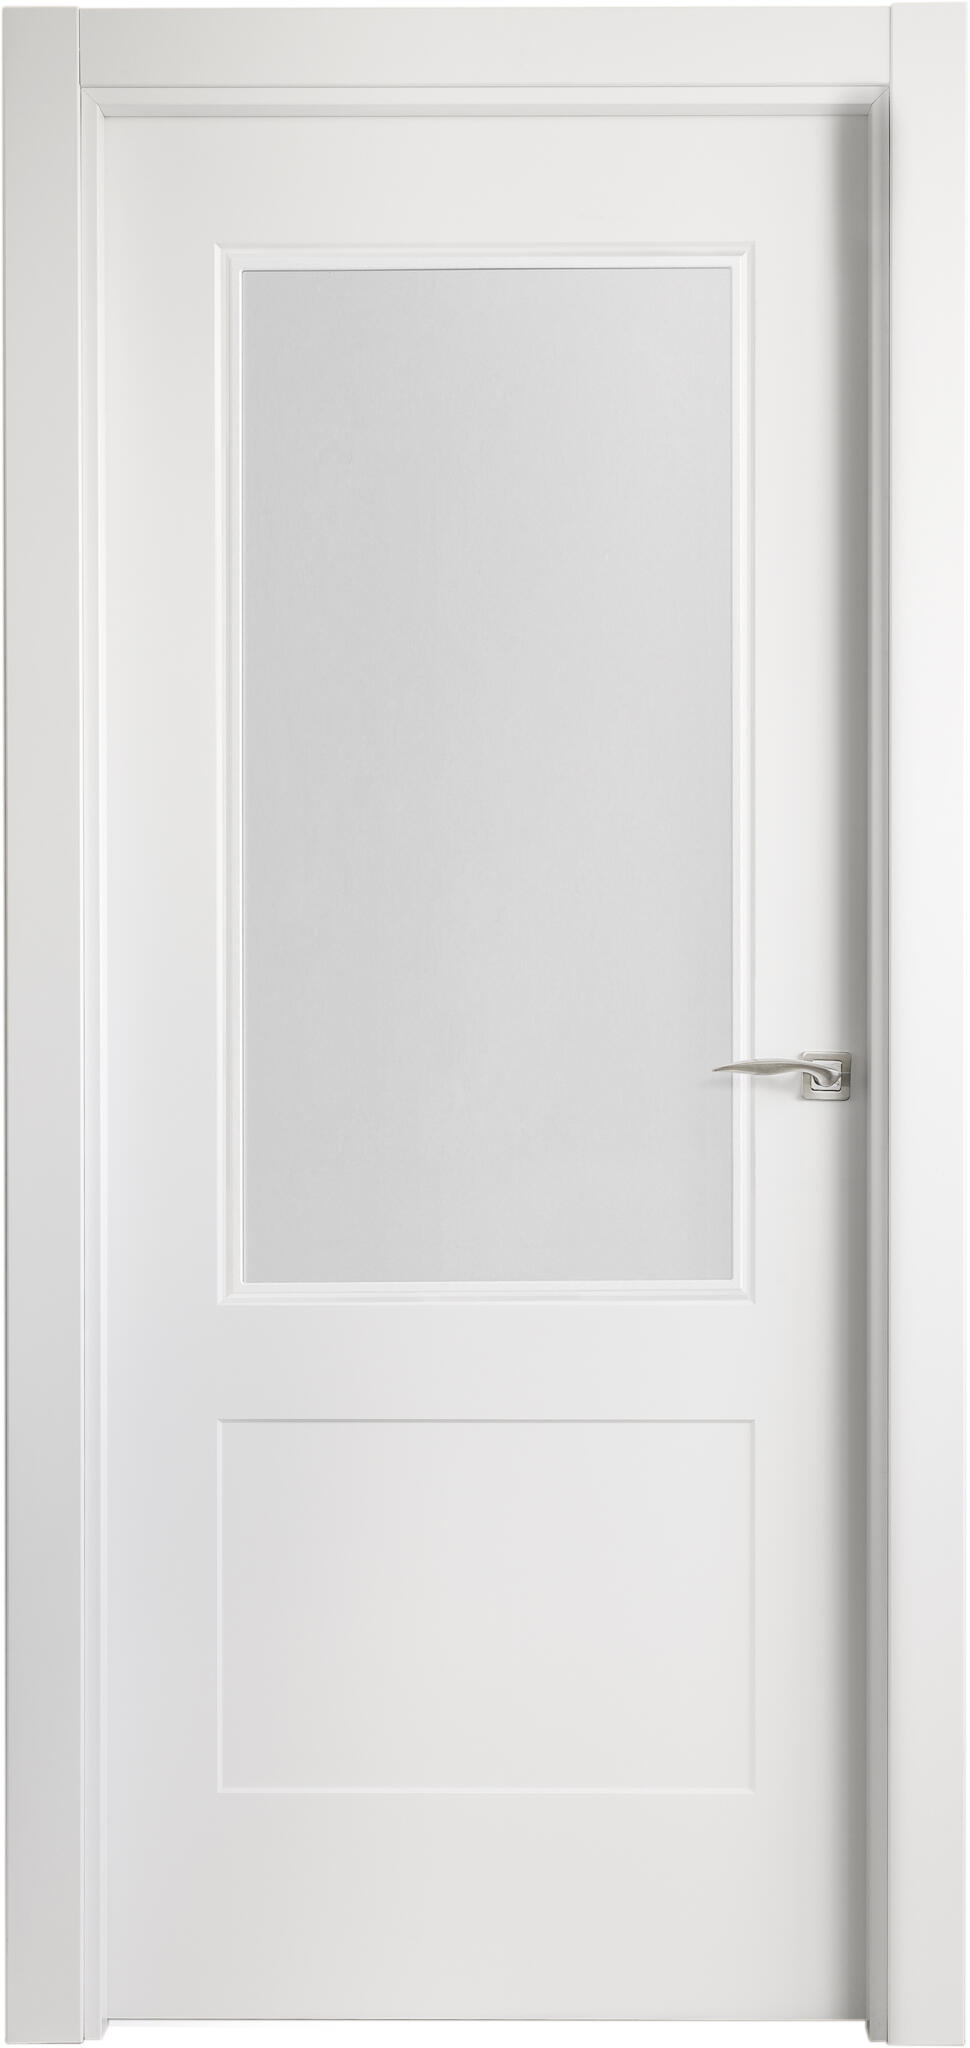 Puerta atlanta plus blanco apertura izquierda con cristal de 9x72,5cm